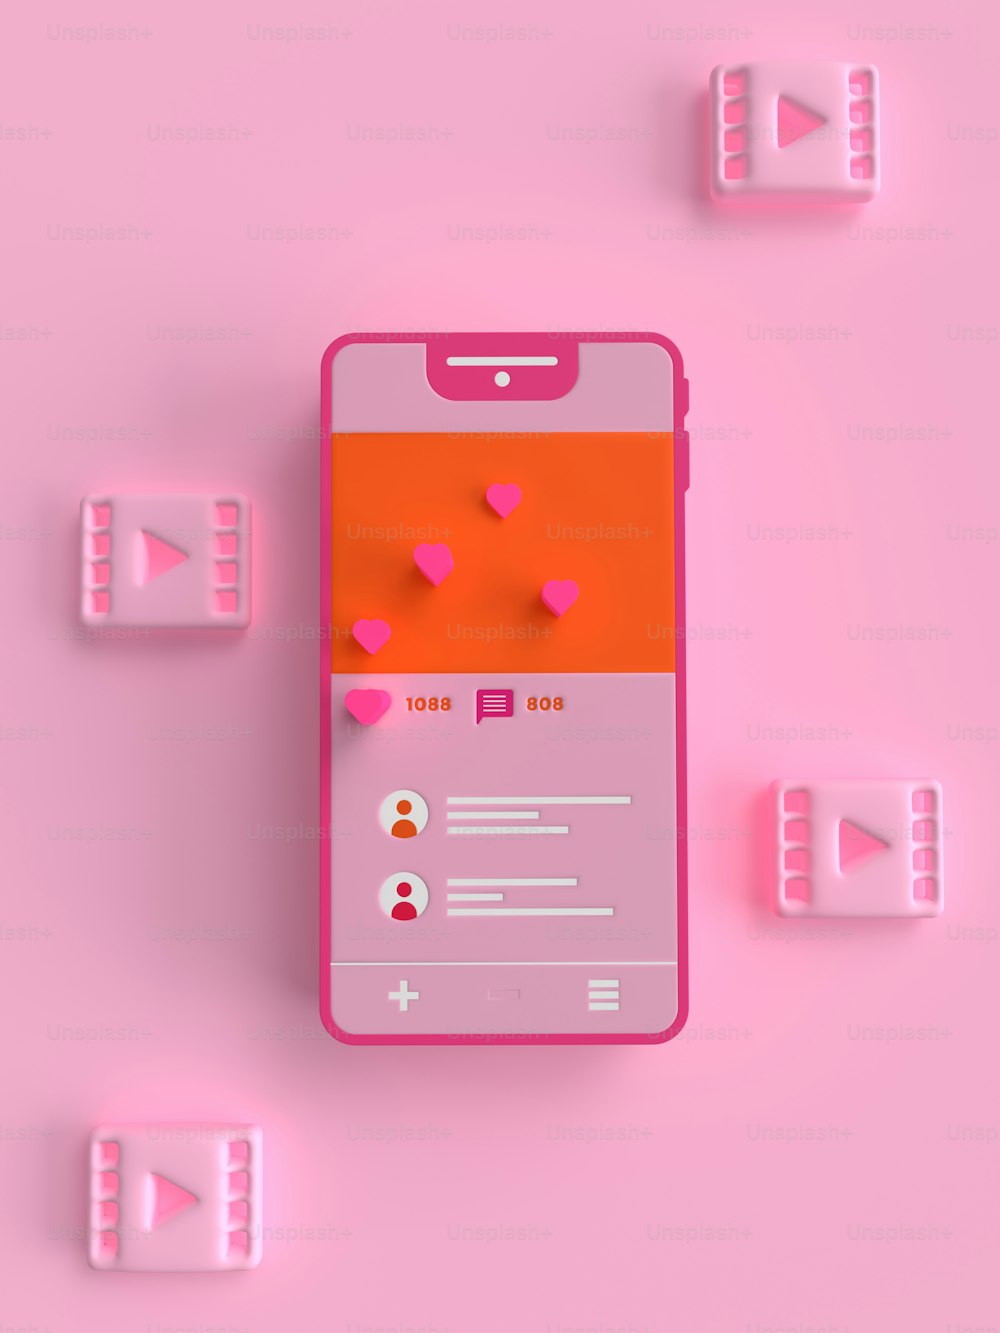 하트가 적힌 분홍색 휴대폰